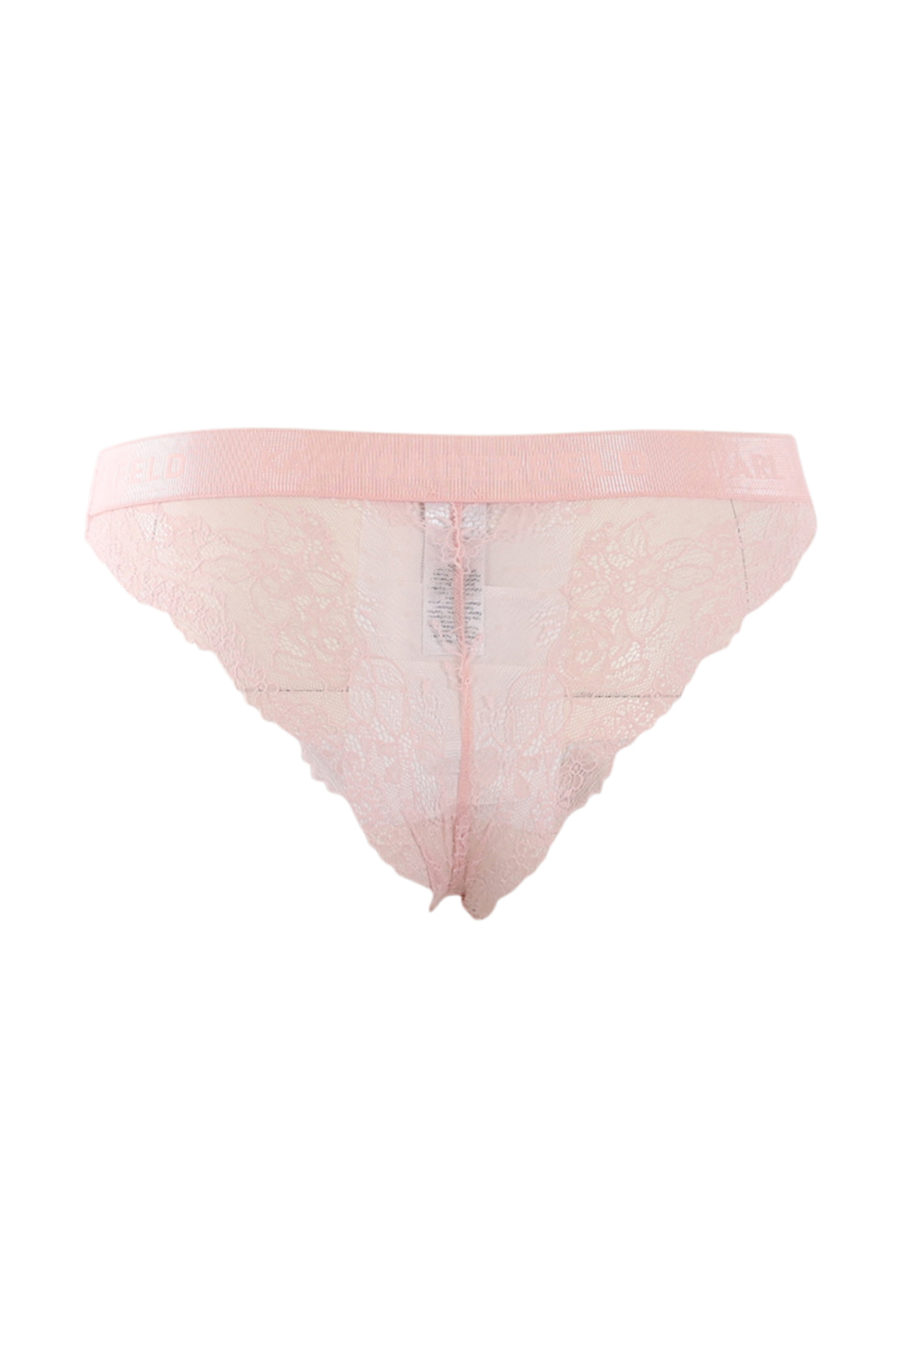 Braguita rosa con detalle de encaje - IMG 0611